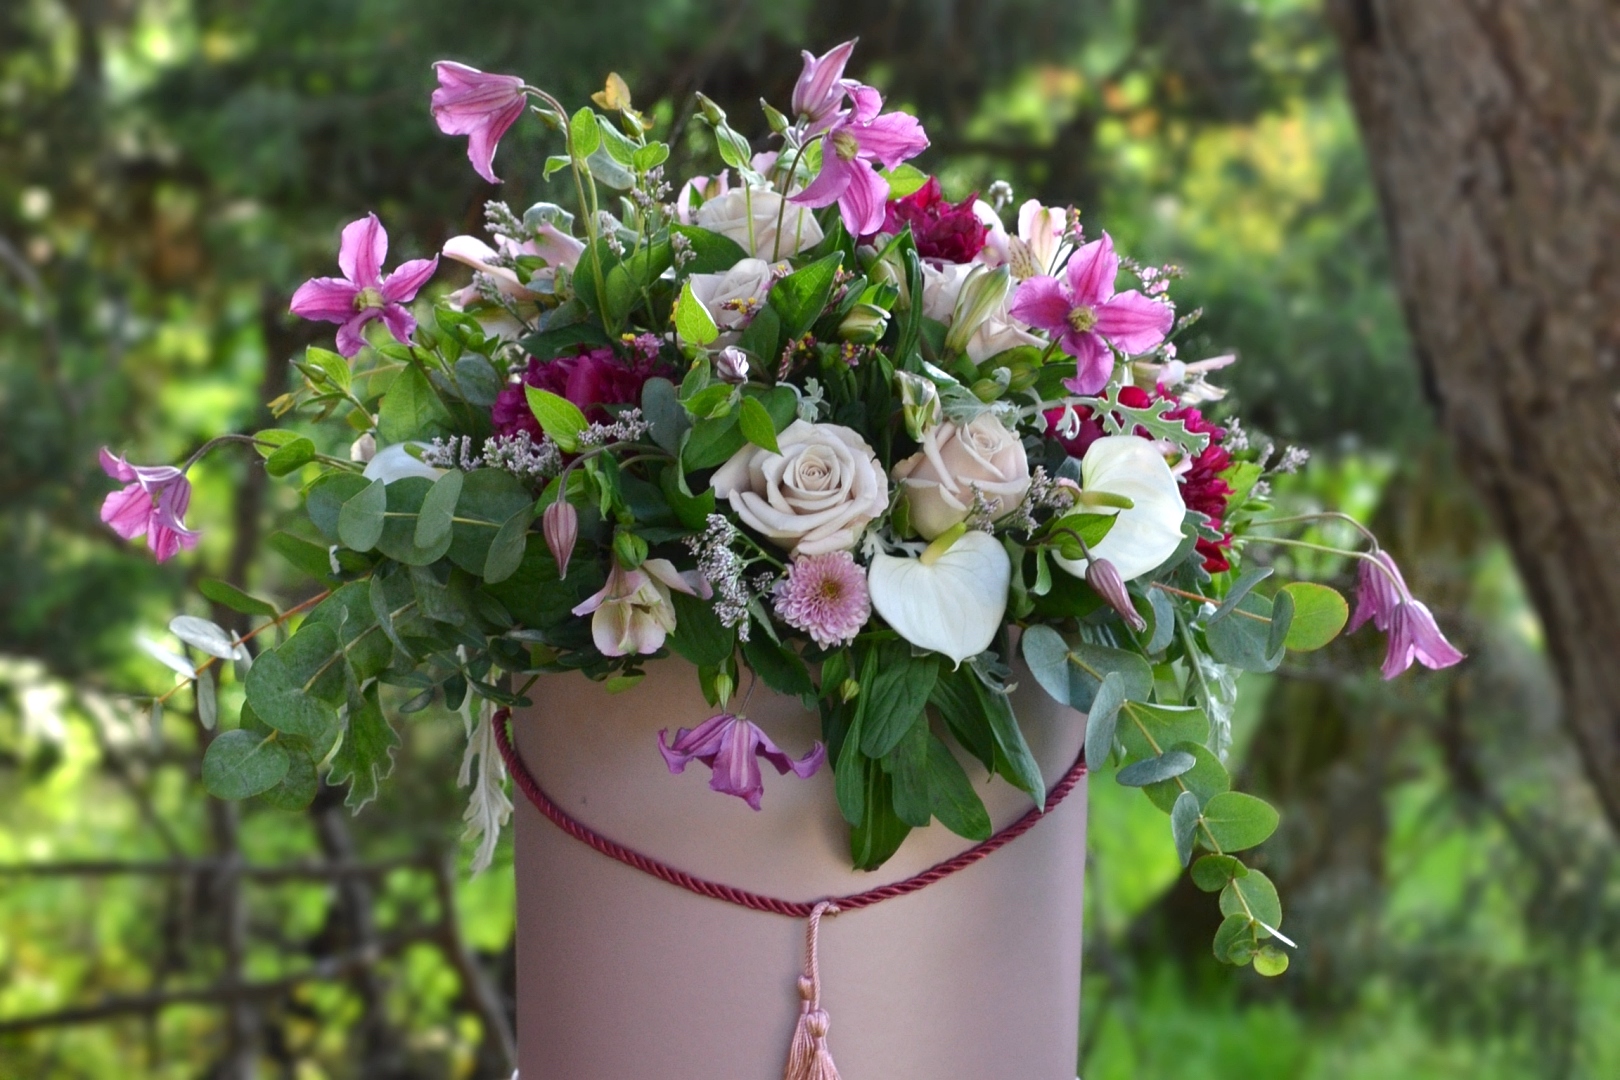 Flower box - Kwiaciarnia Atena w Luboniu, Traugutta 24A, bukiety, kompozycje i dekoracje, flowerbox ze świeżych kwiatów